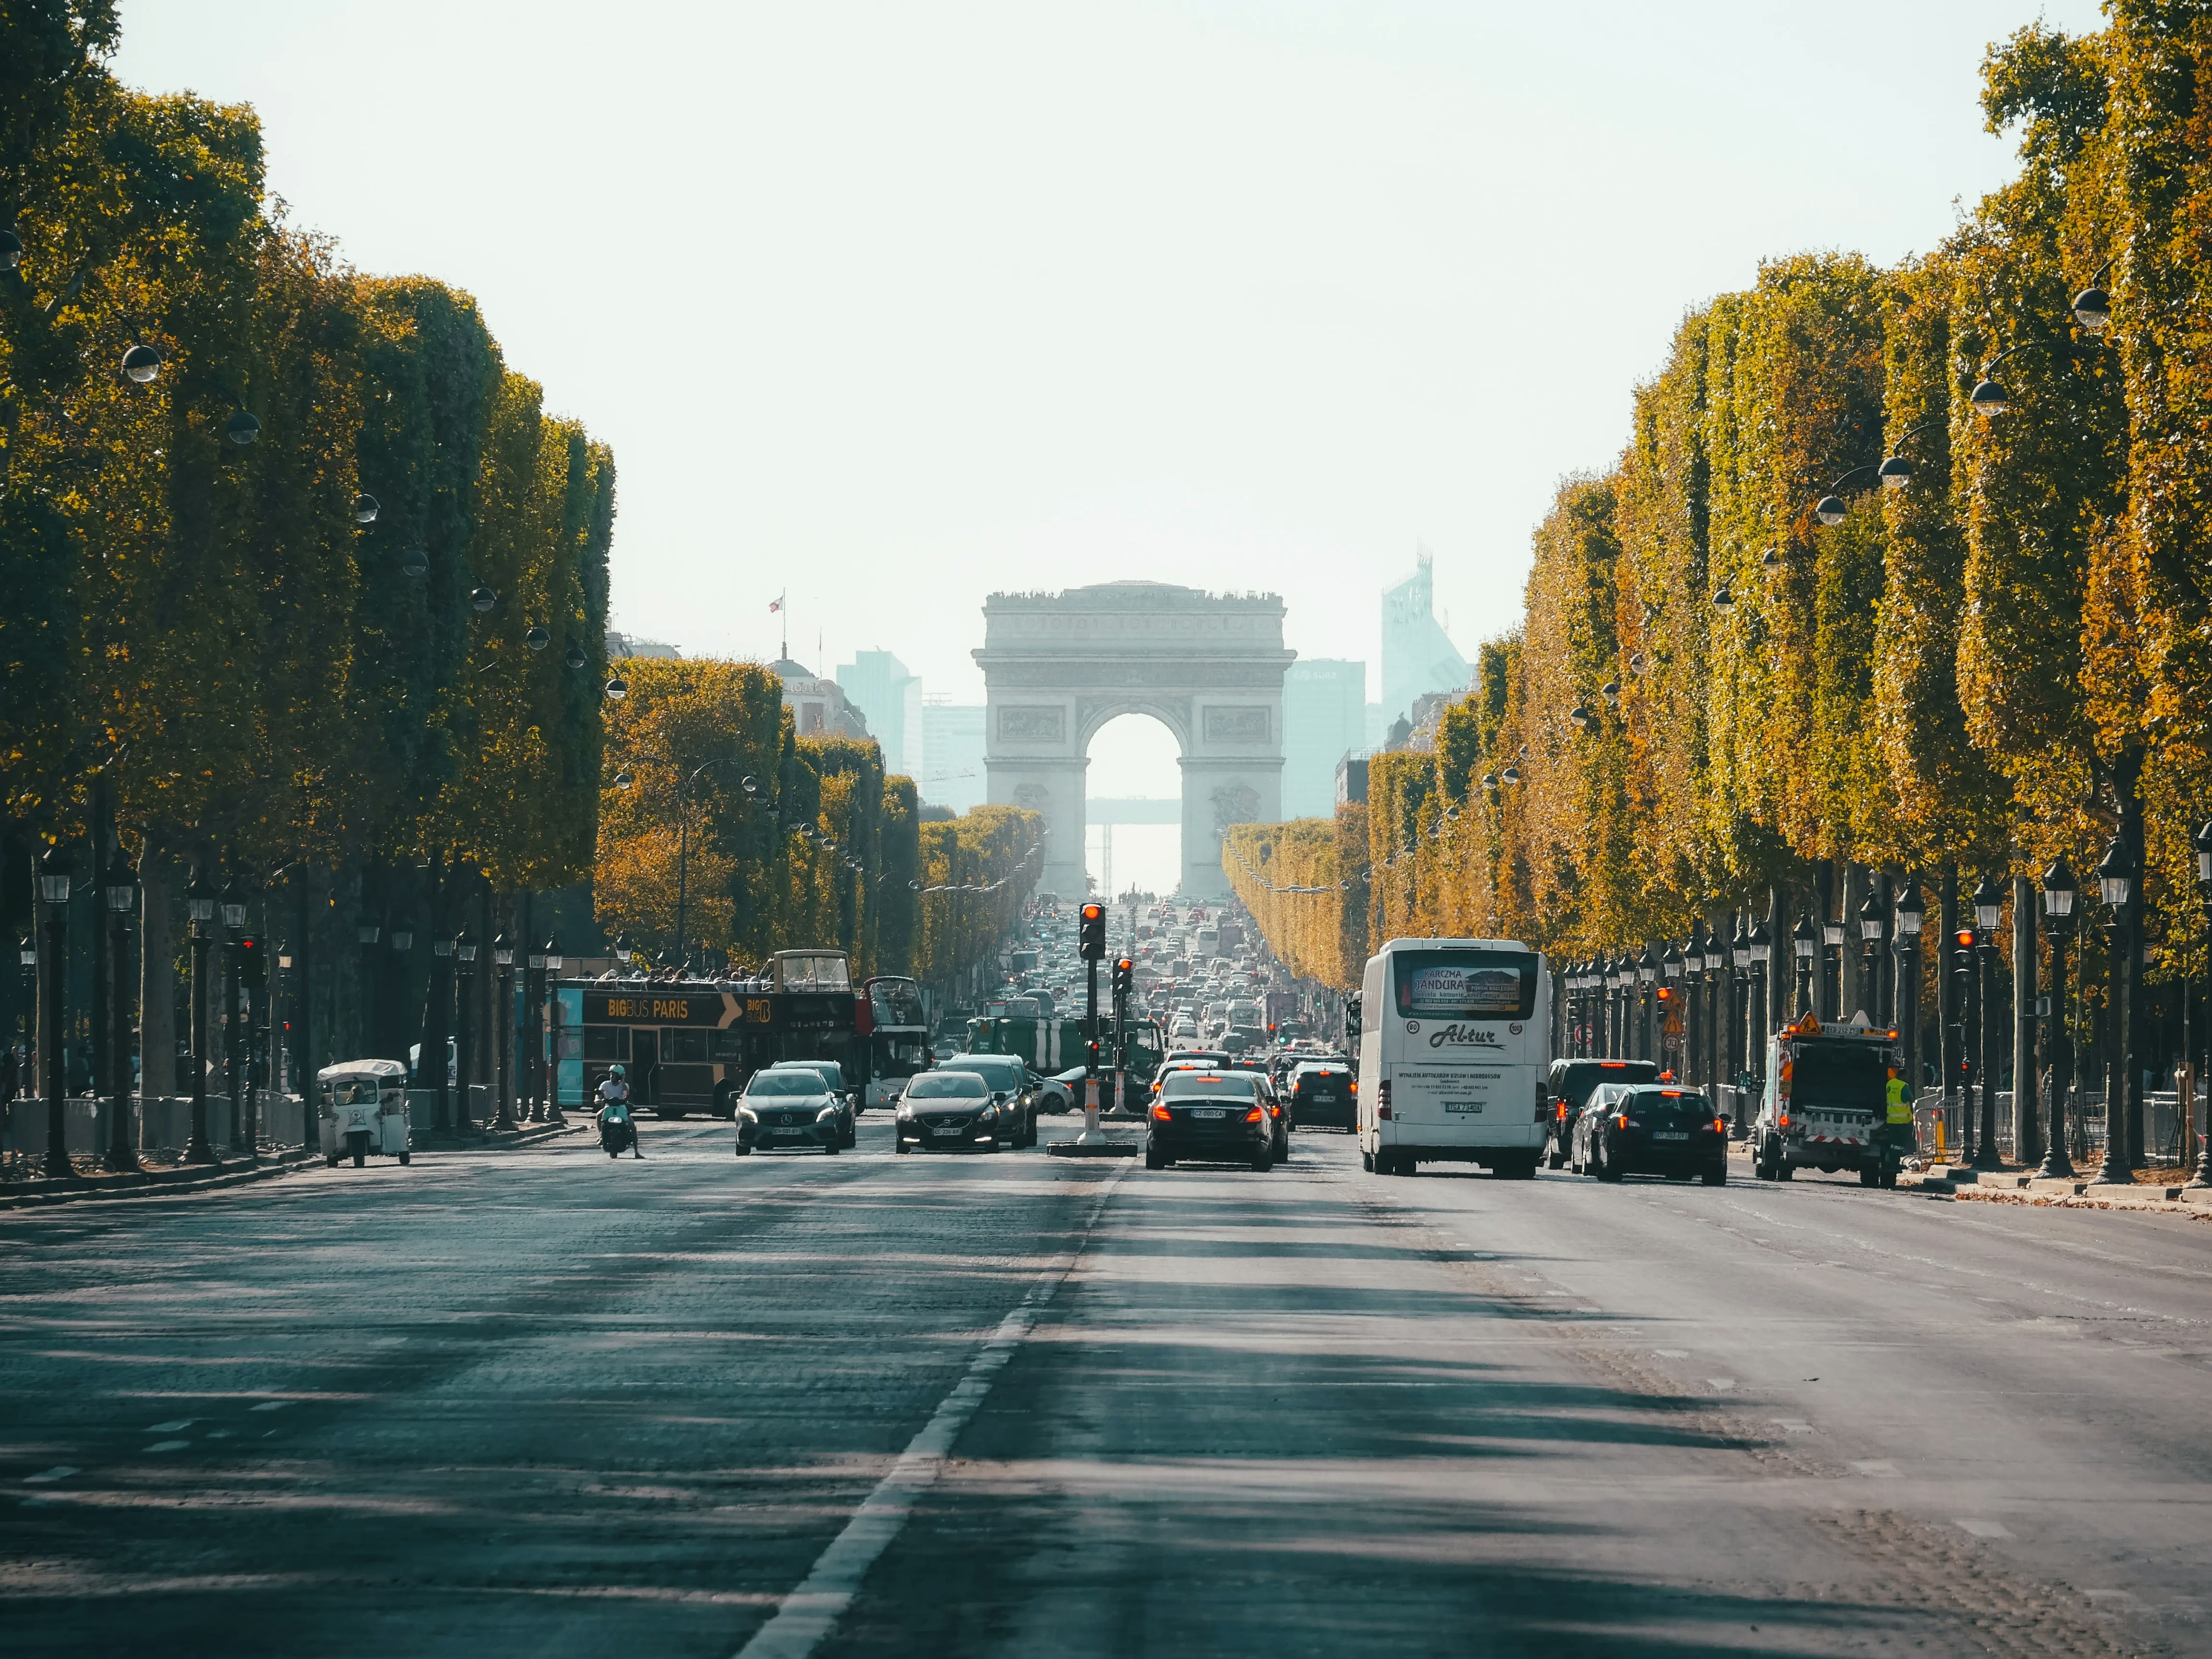 Strolling The Champs-Élysées